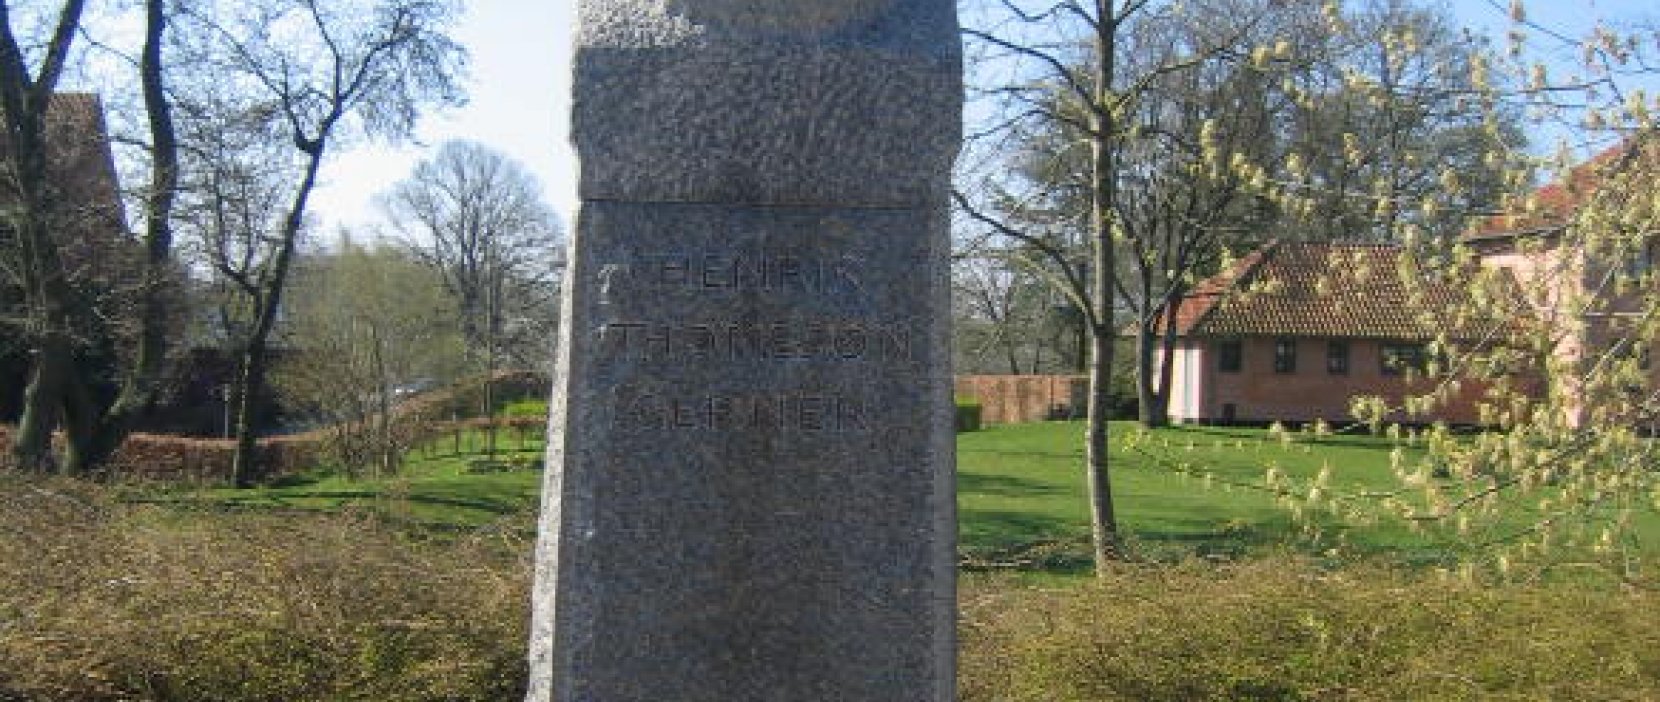 monument for Henrik Gerner